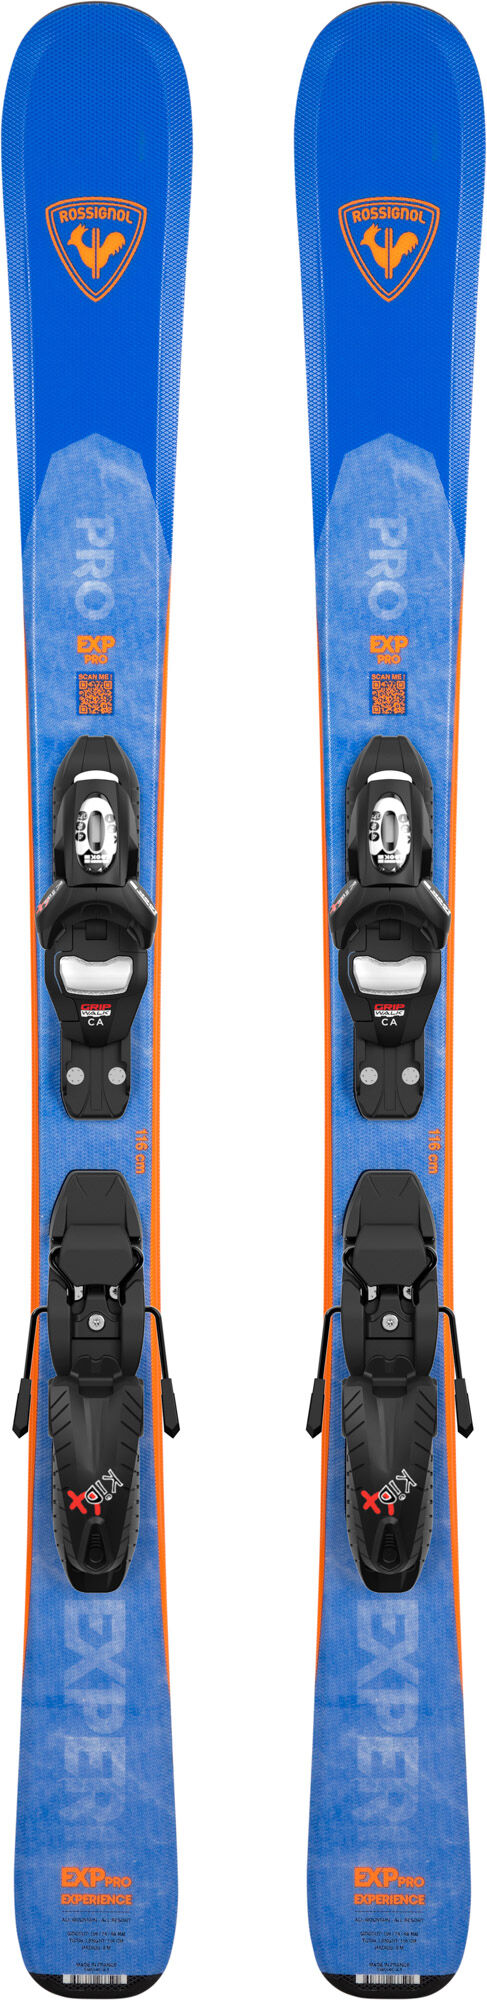 新作の商品 ロシニョール2022 EXPERIENCE W PRO KID-X 4GW - スキー